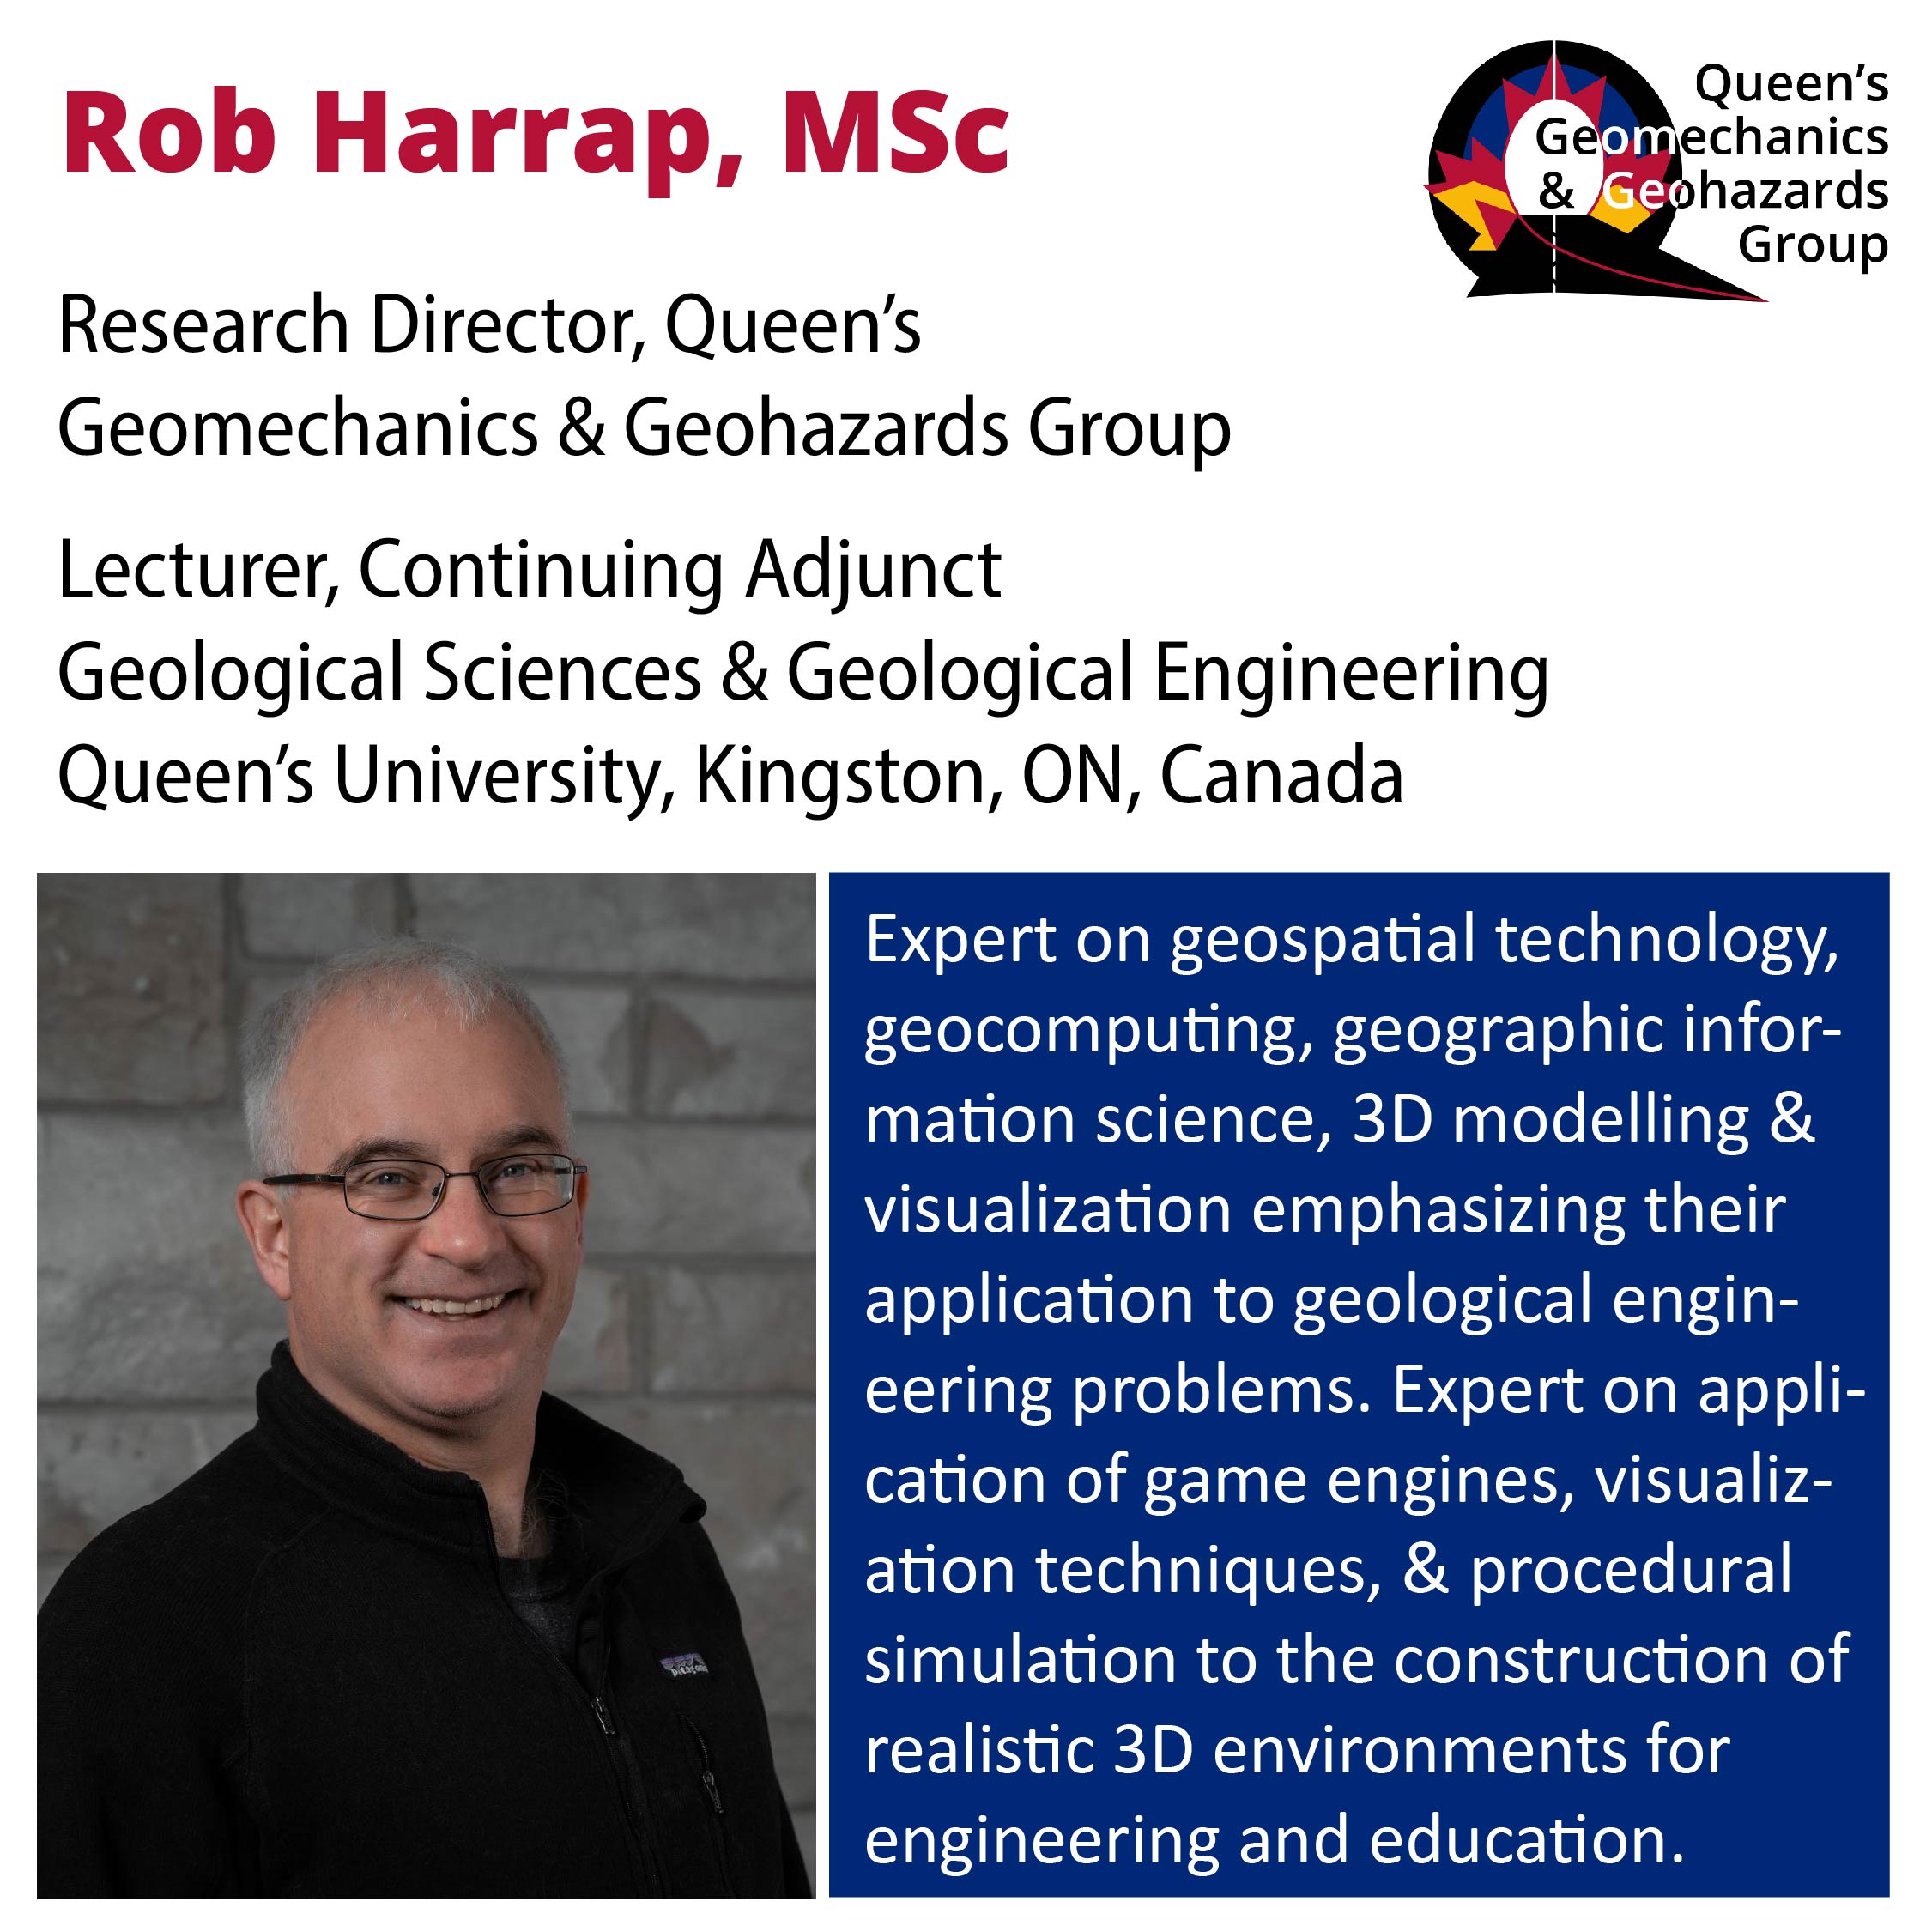 Rob Harrap Profile Summary